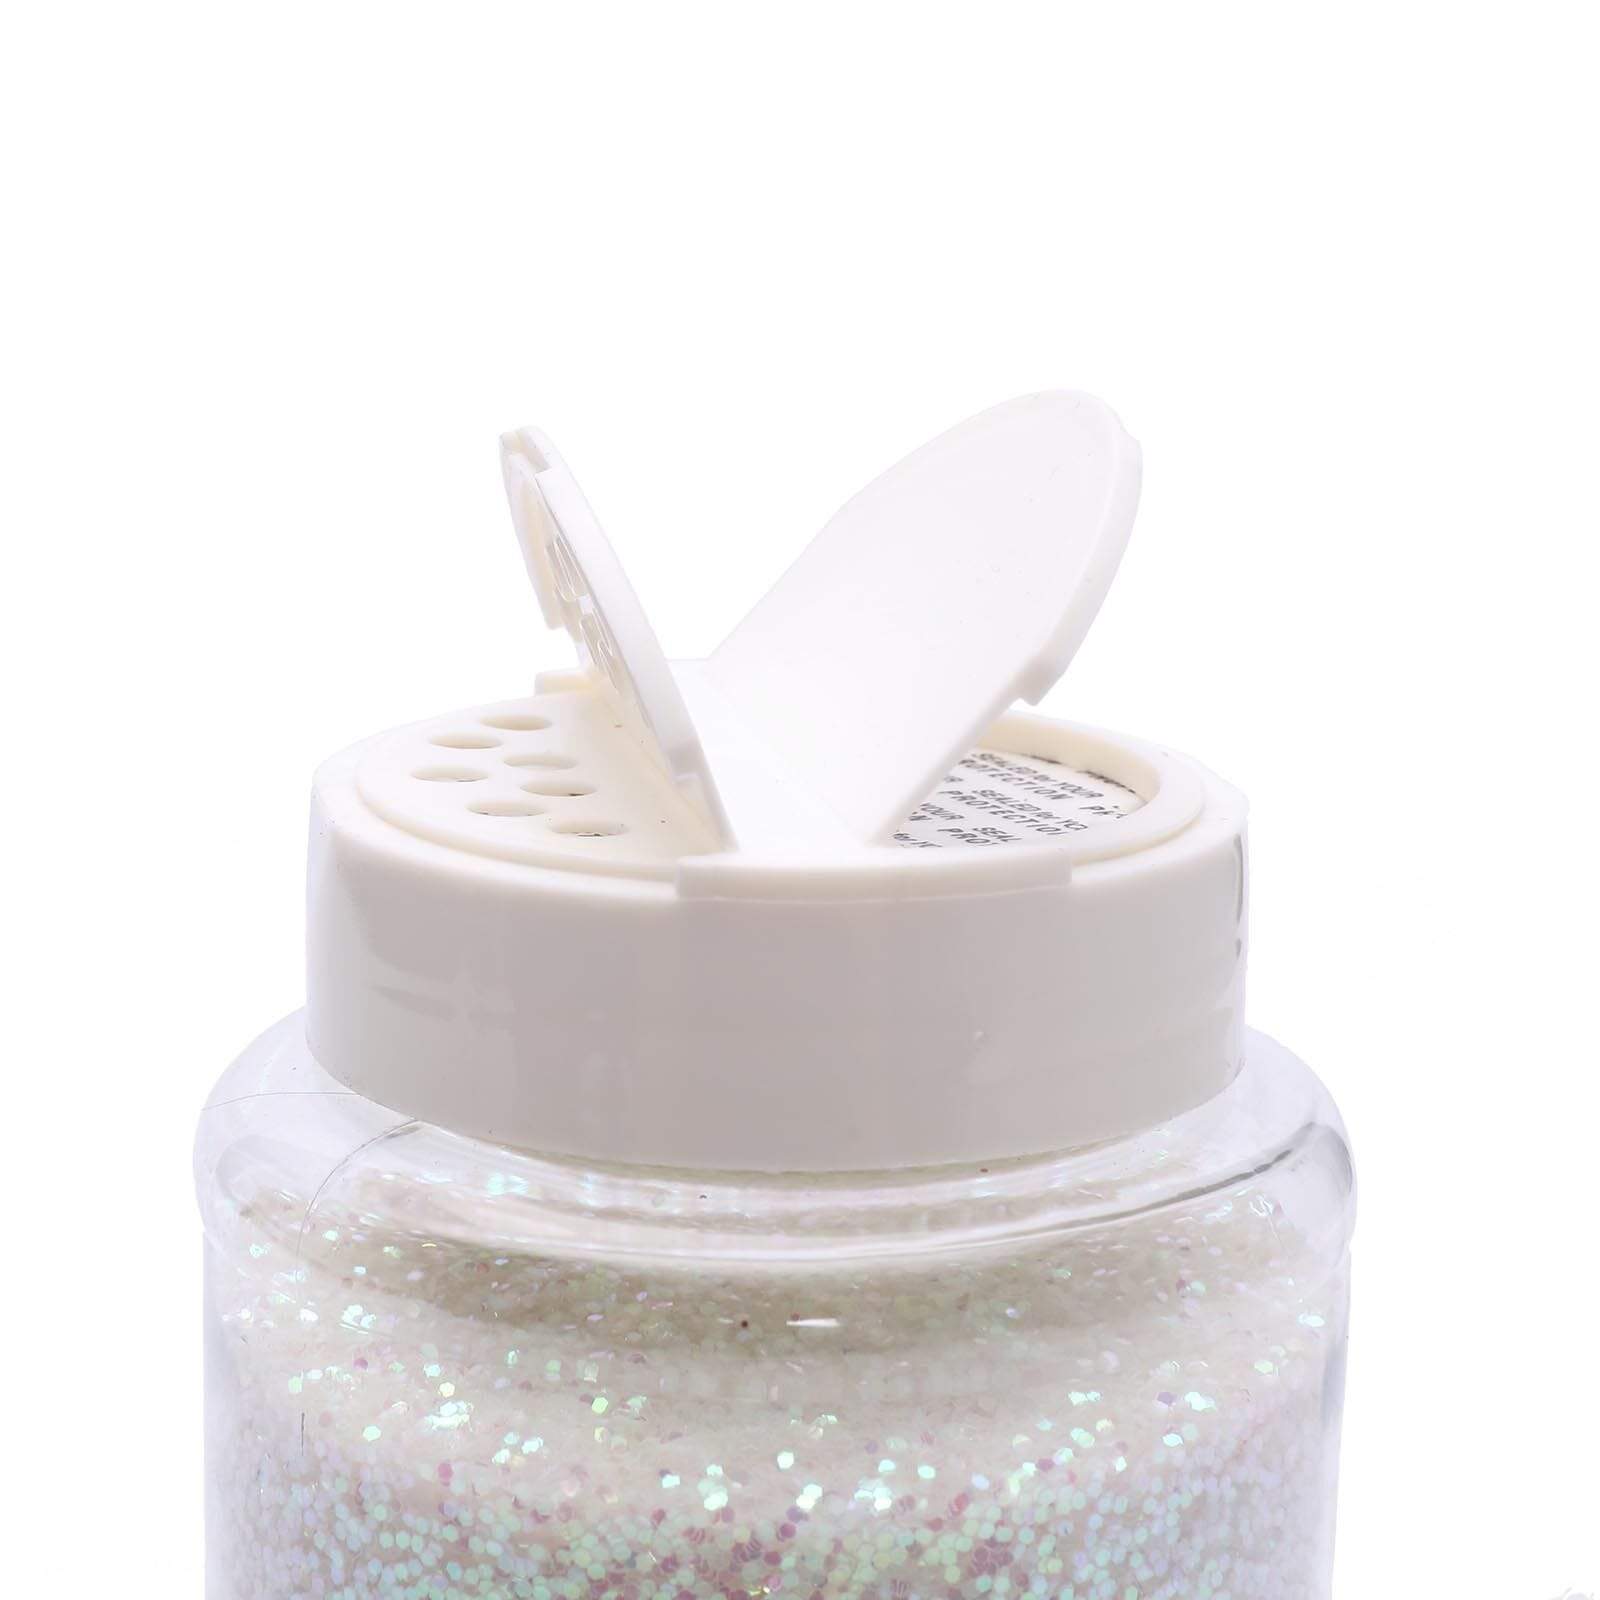 1 lb Shimmering Craft Glitter